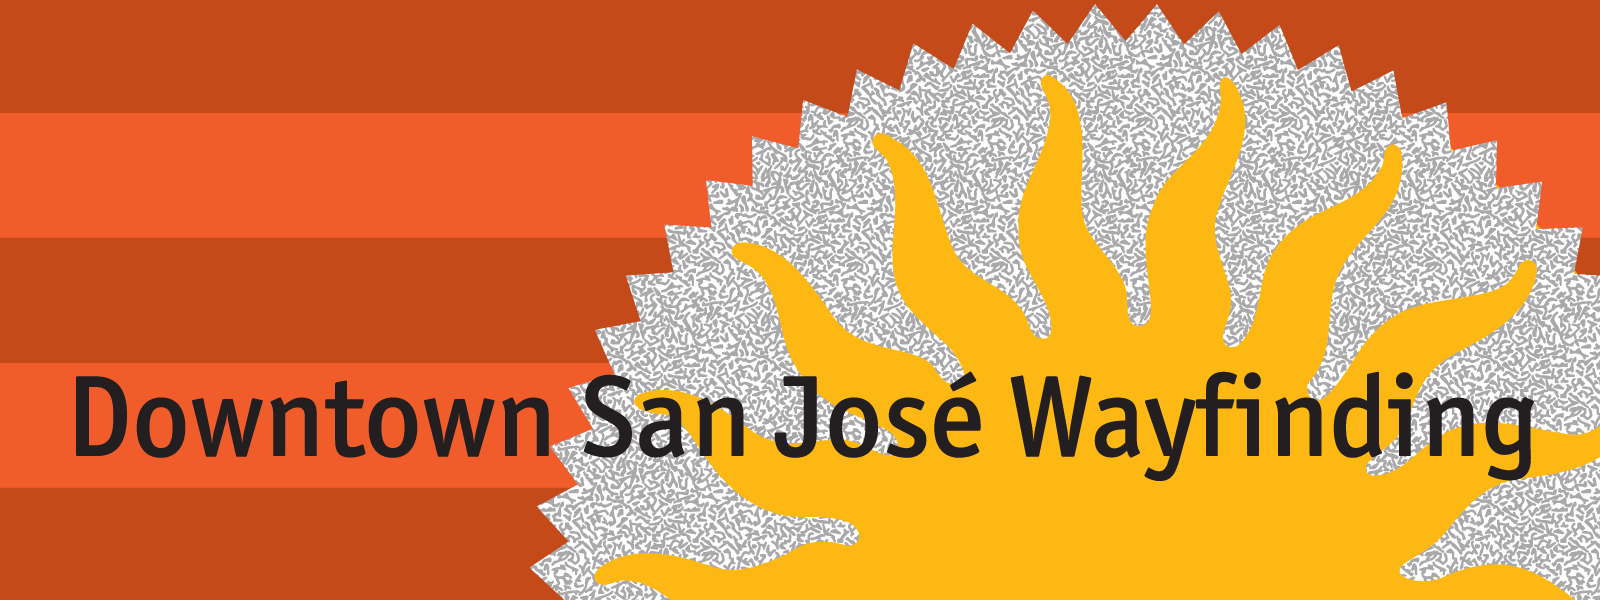 8-20150403_San_Jose_Downtown_web_banner.png